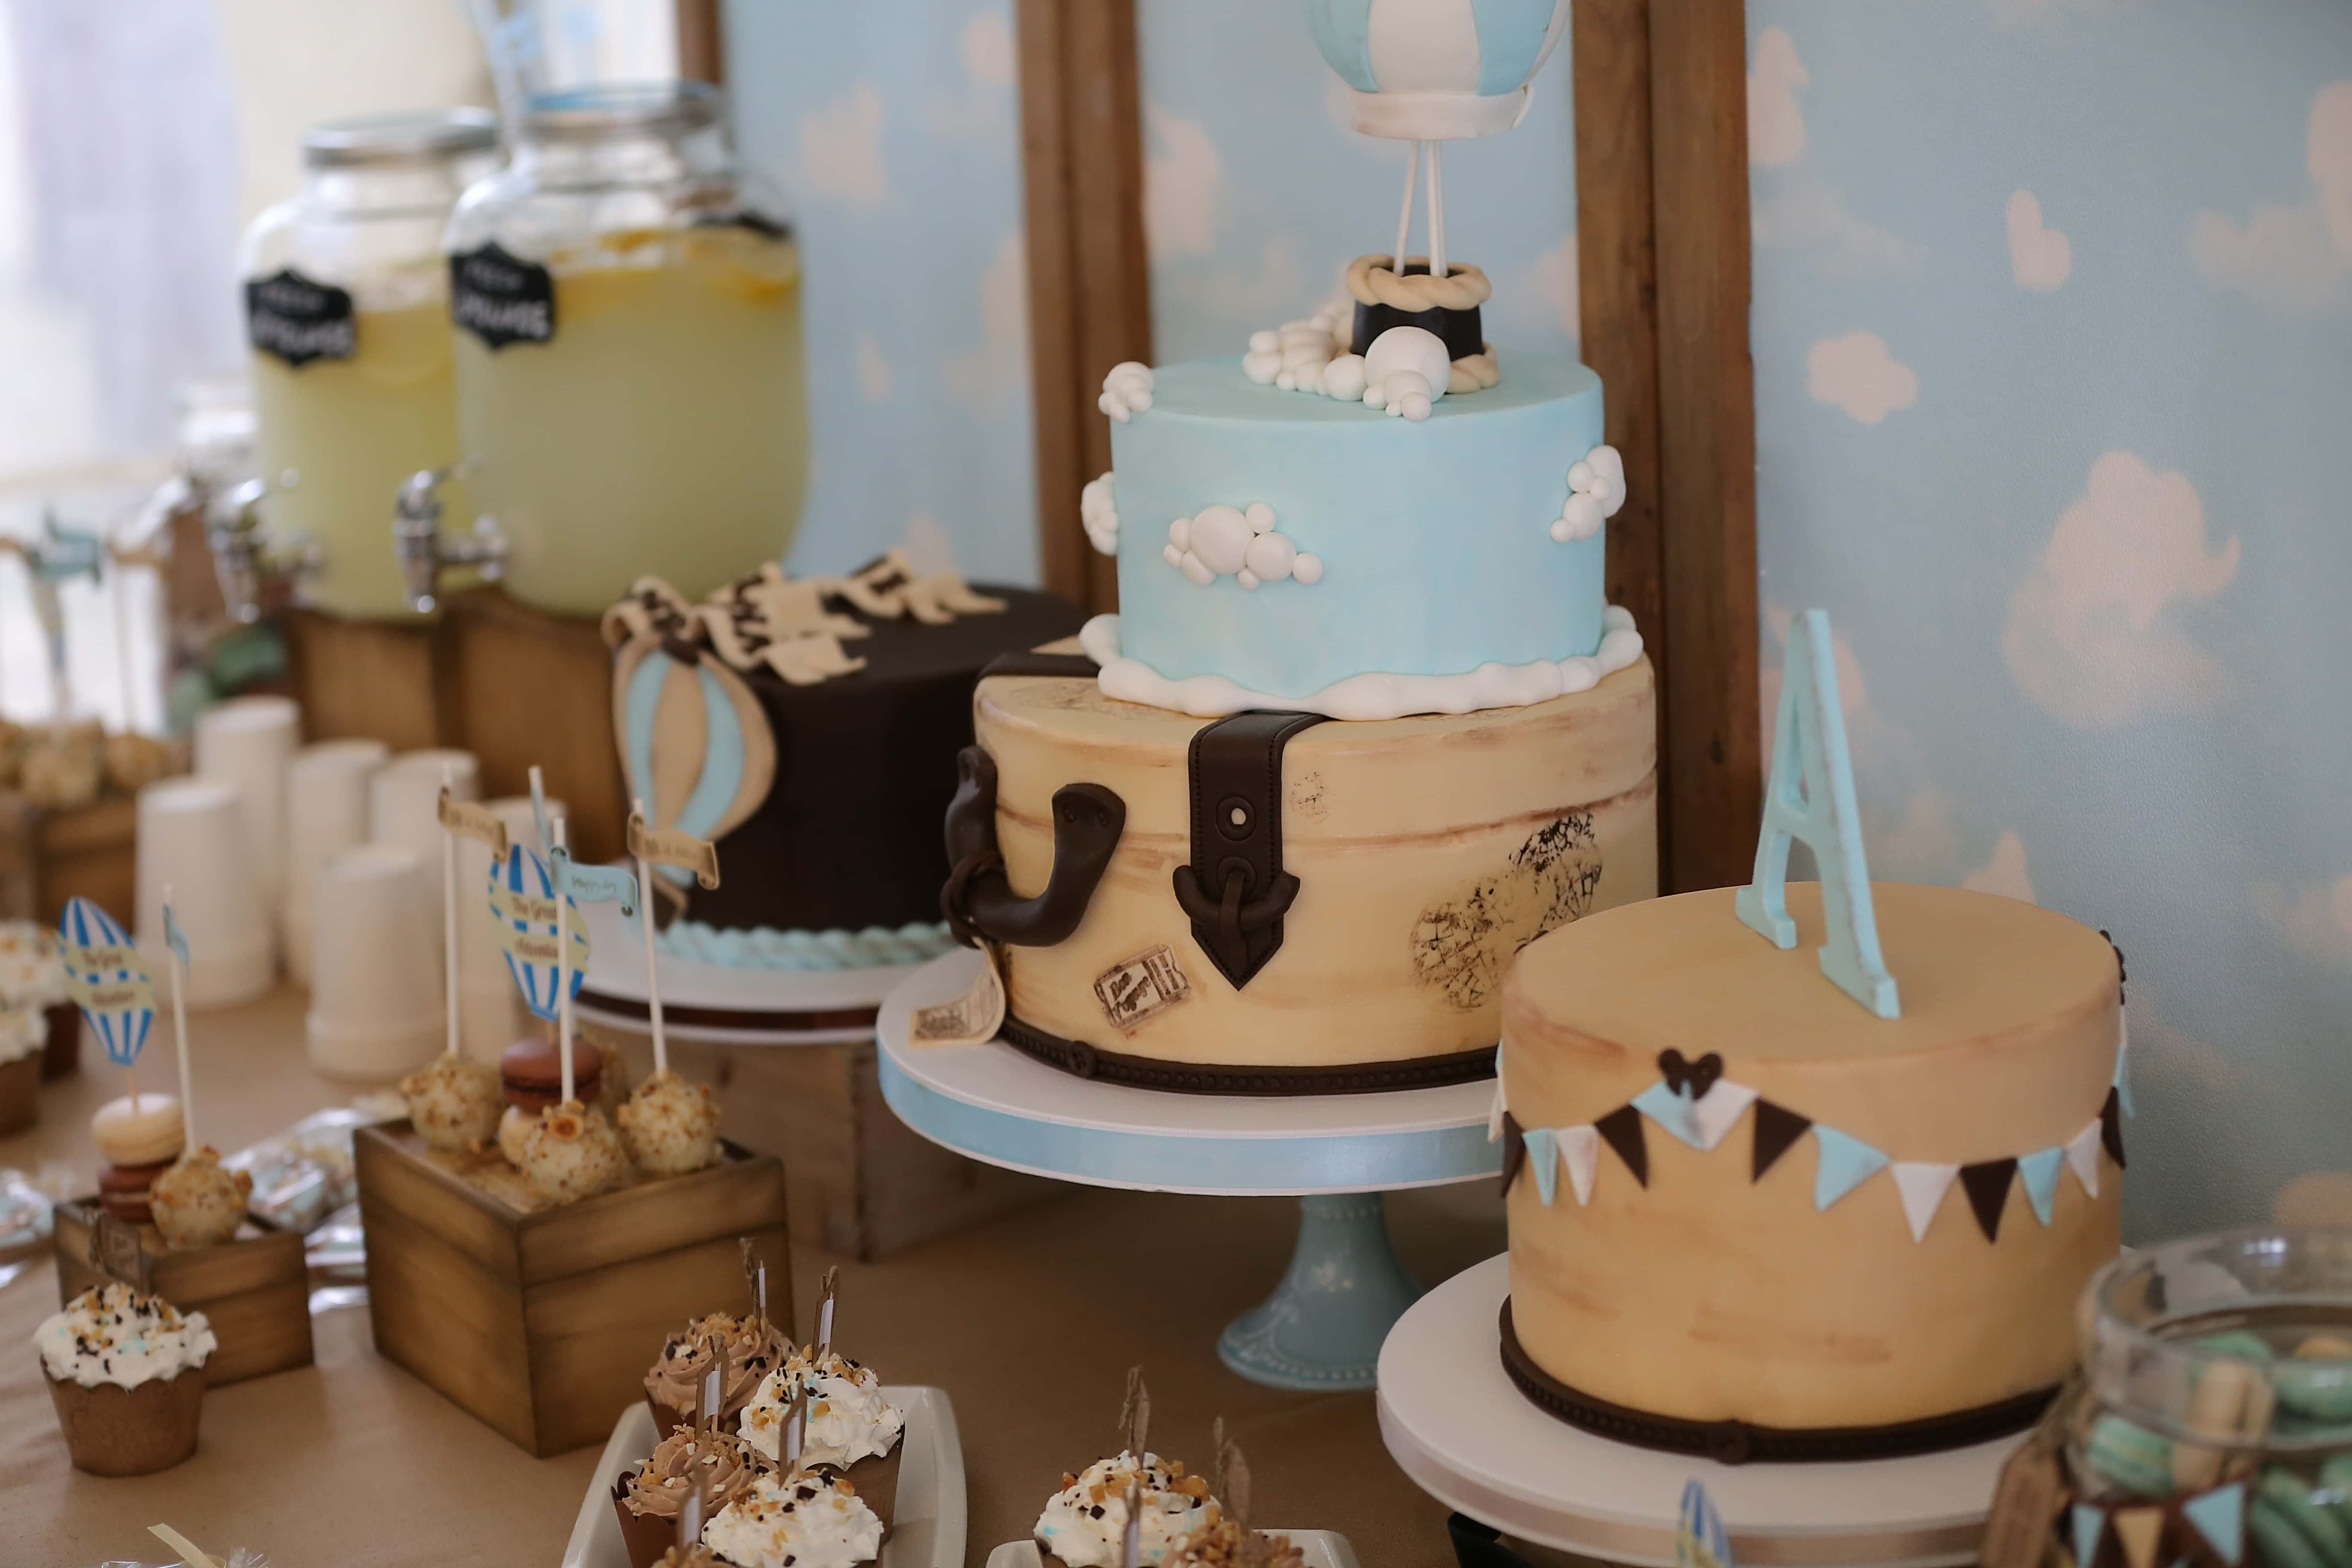 フリー写真画像 誕生日ケーキ 誕生日 パーティー ロリポップ カップケーキ レモネード インテリア デザイン カップ ベーキング 屋内で